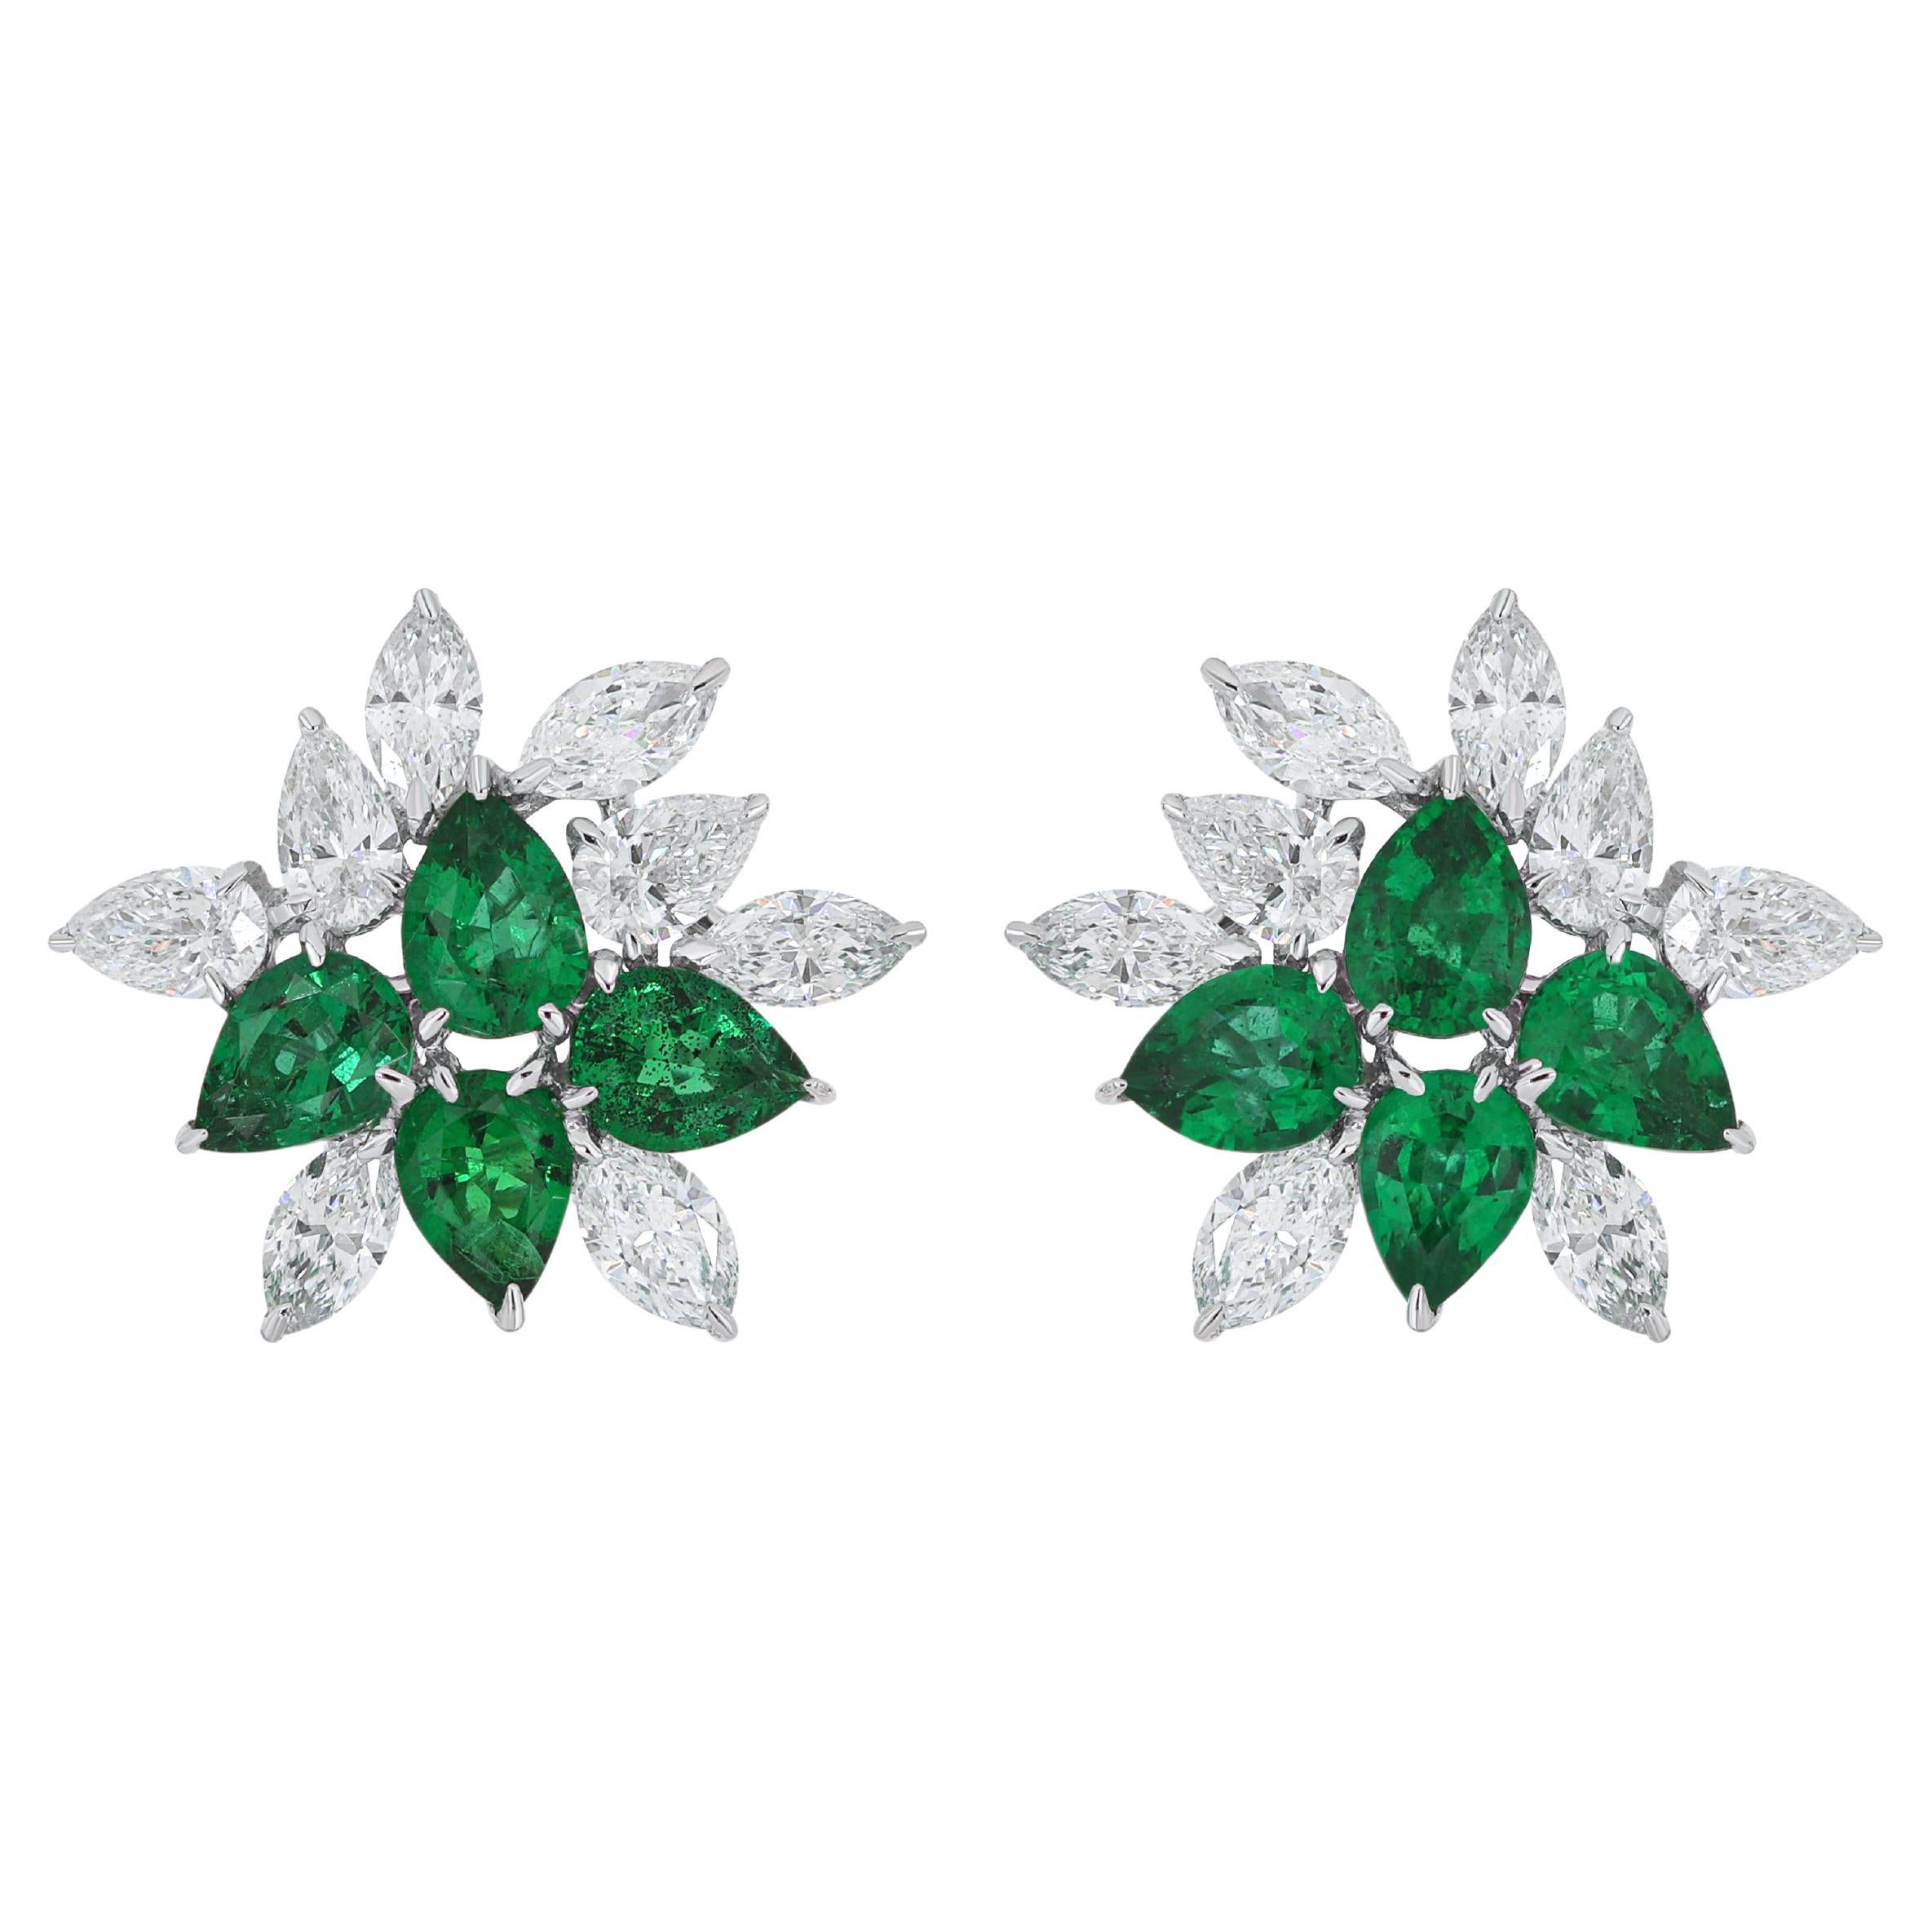 Ohrring mit Smaragd- und Diamantbesatz aus 18 Karat Weißgold - Handcraft-Schmuck 